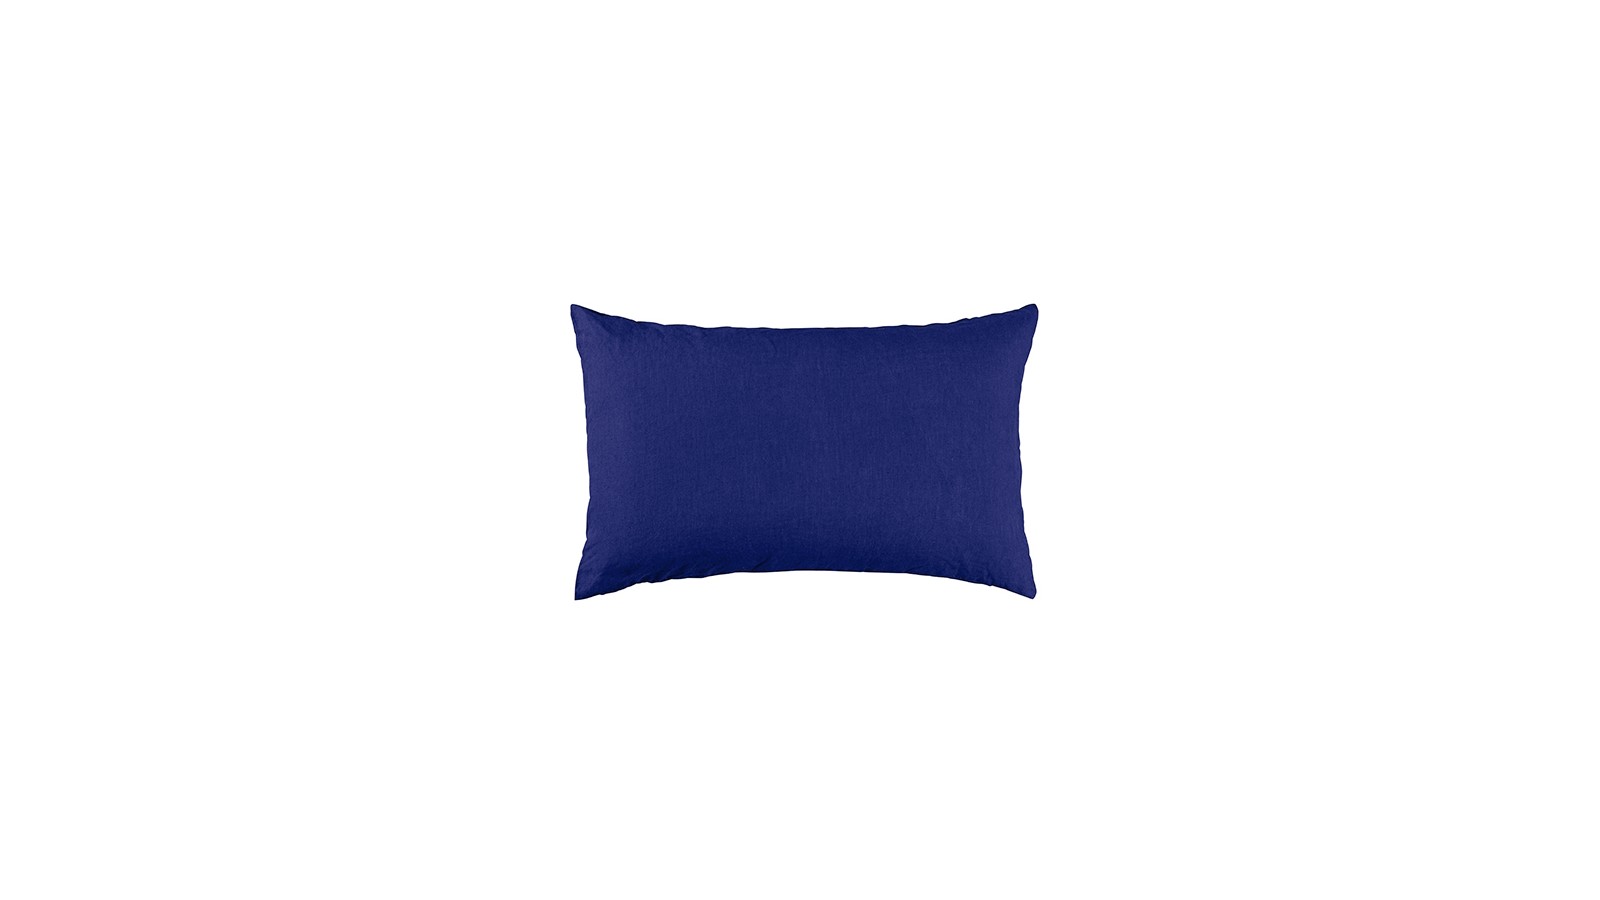 Housse de coussin rectangulaire 30 x 40 cm en lin lavé uni Bleu Klein